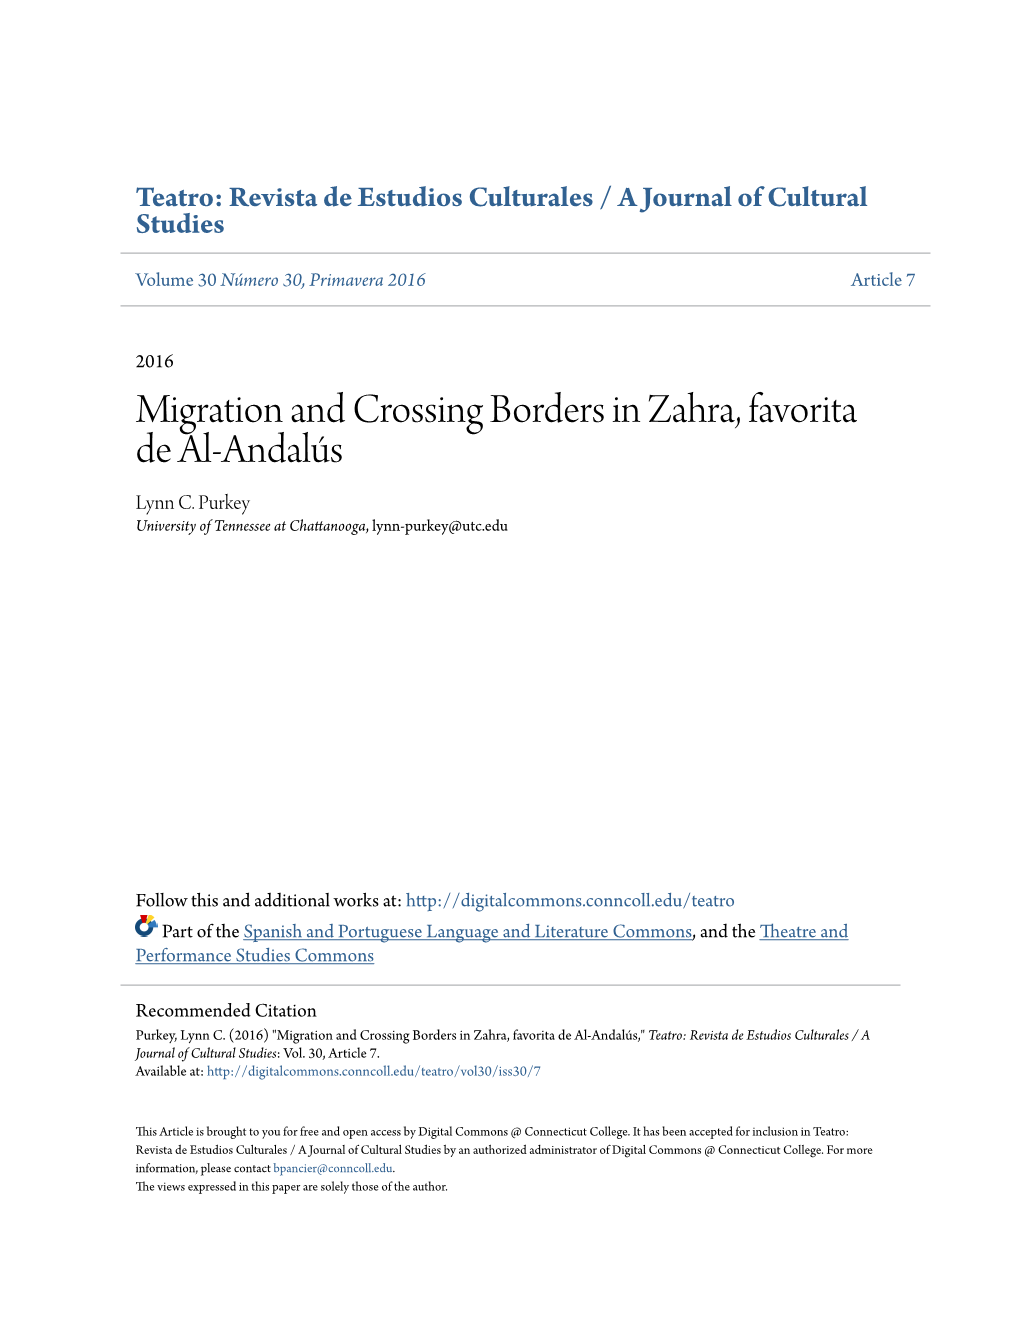 Migration and Crossing Borders in Zahra, Favorita De Al-Andalús Lynn C